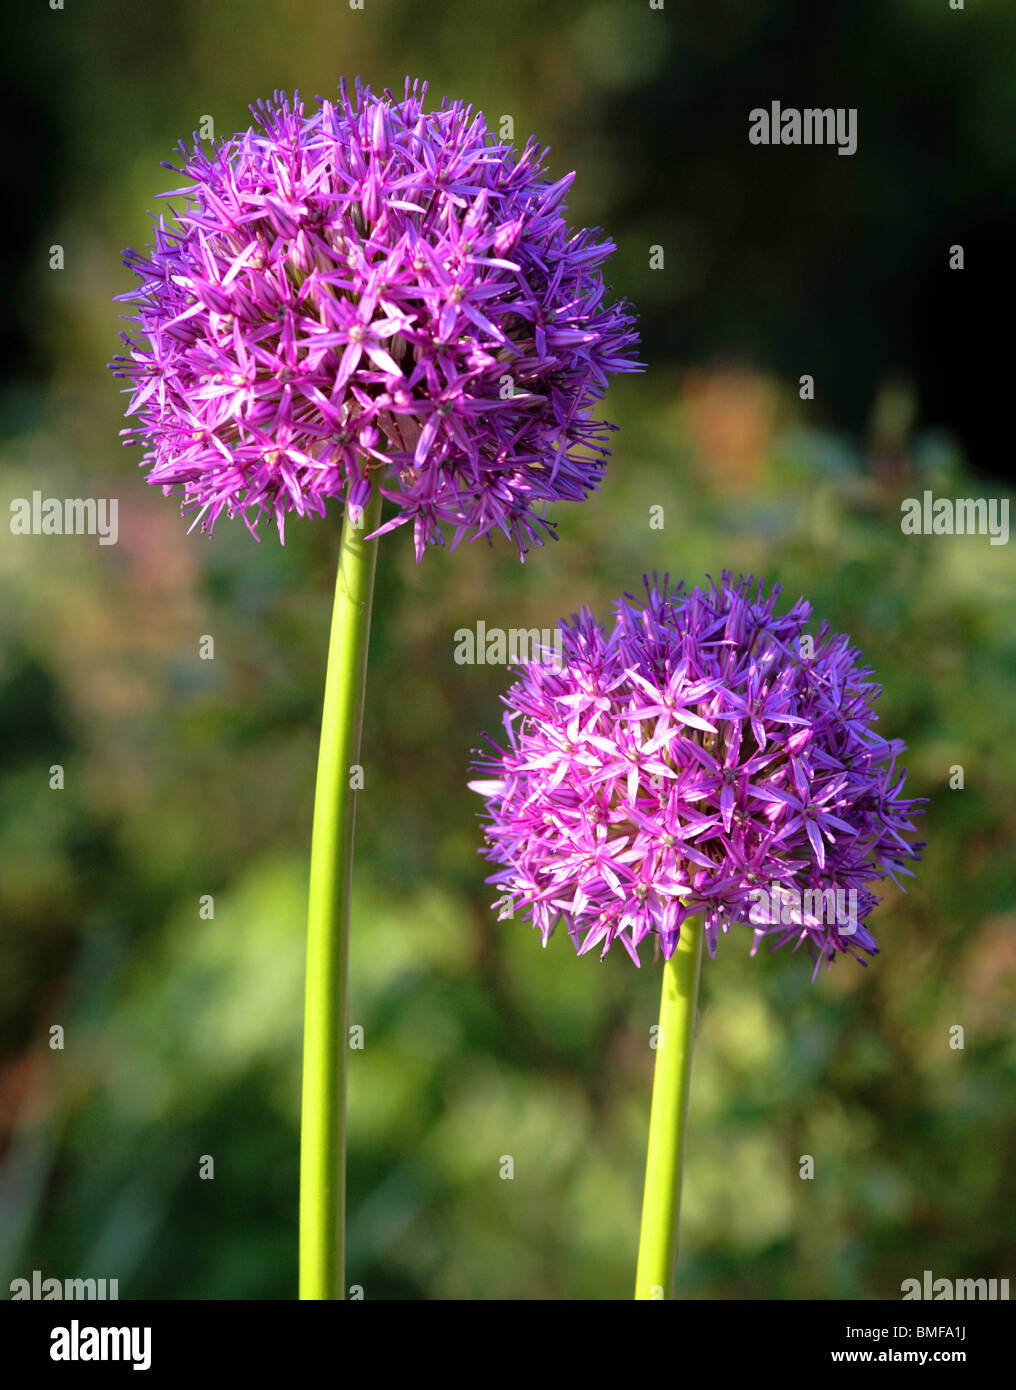 Purple Alium flower heads Stock Photo